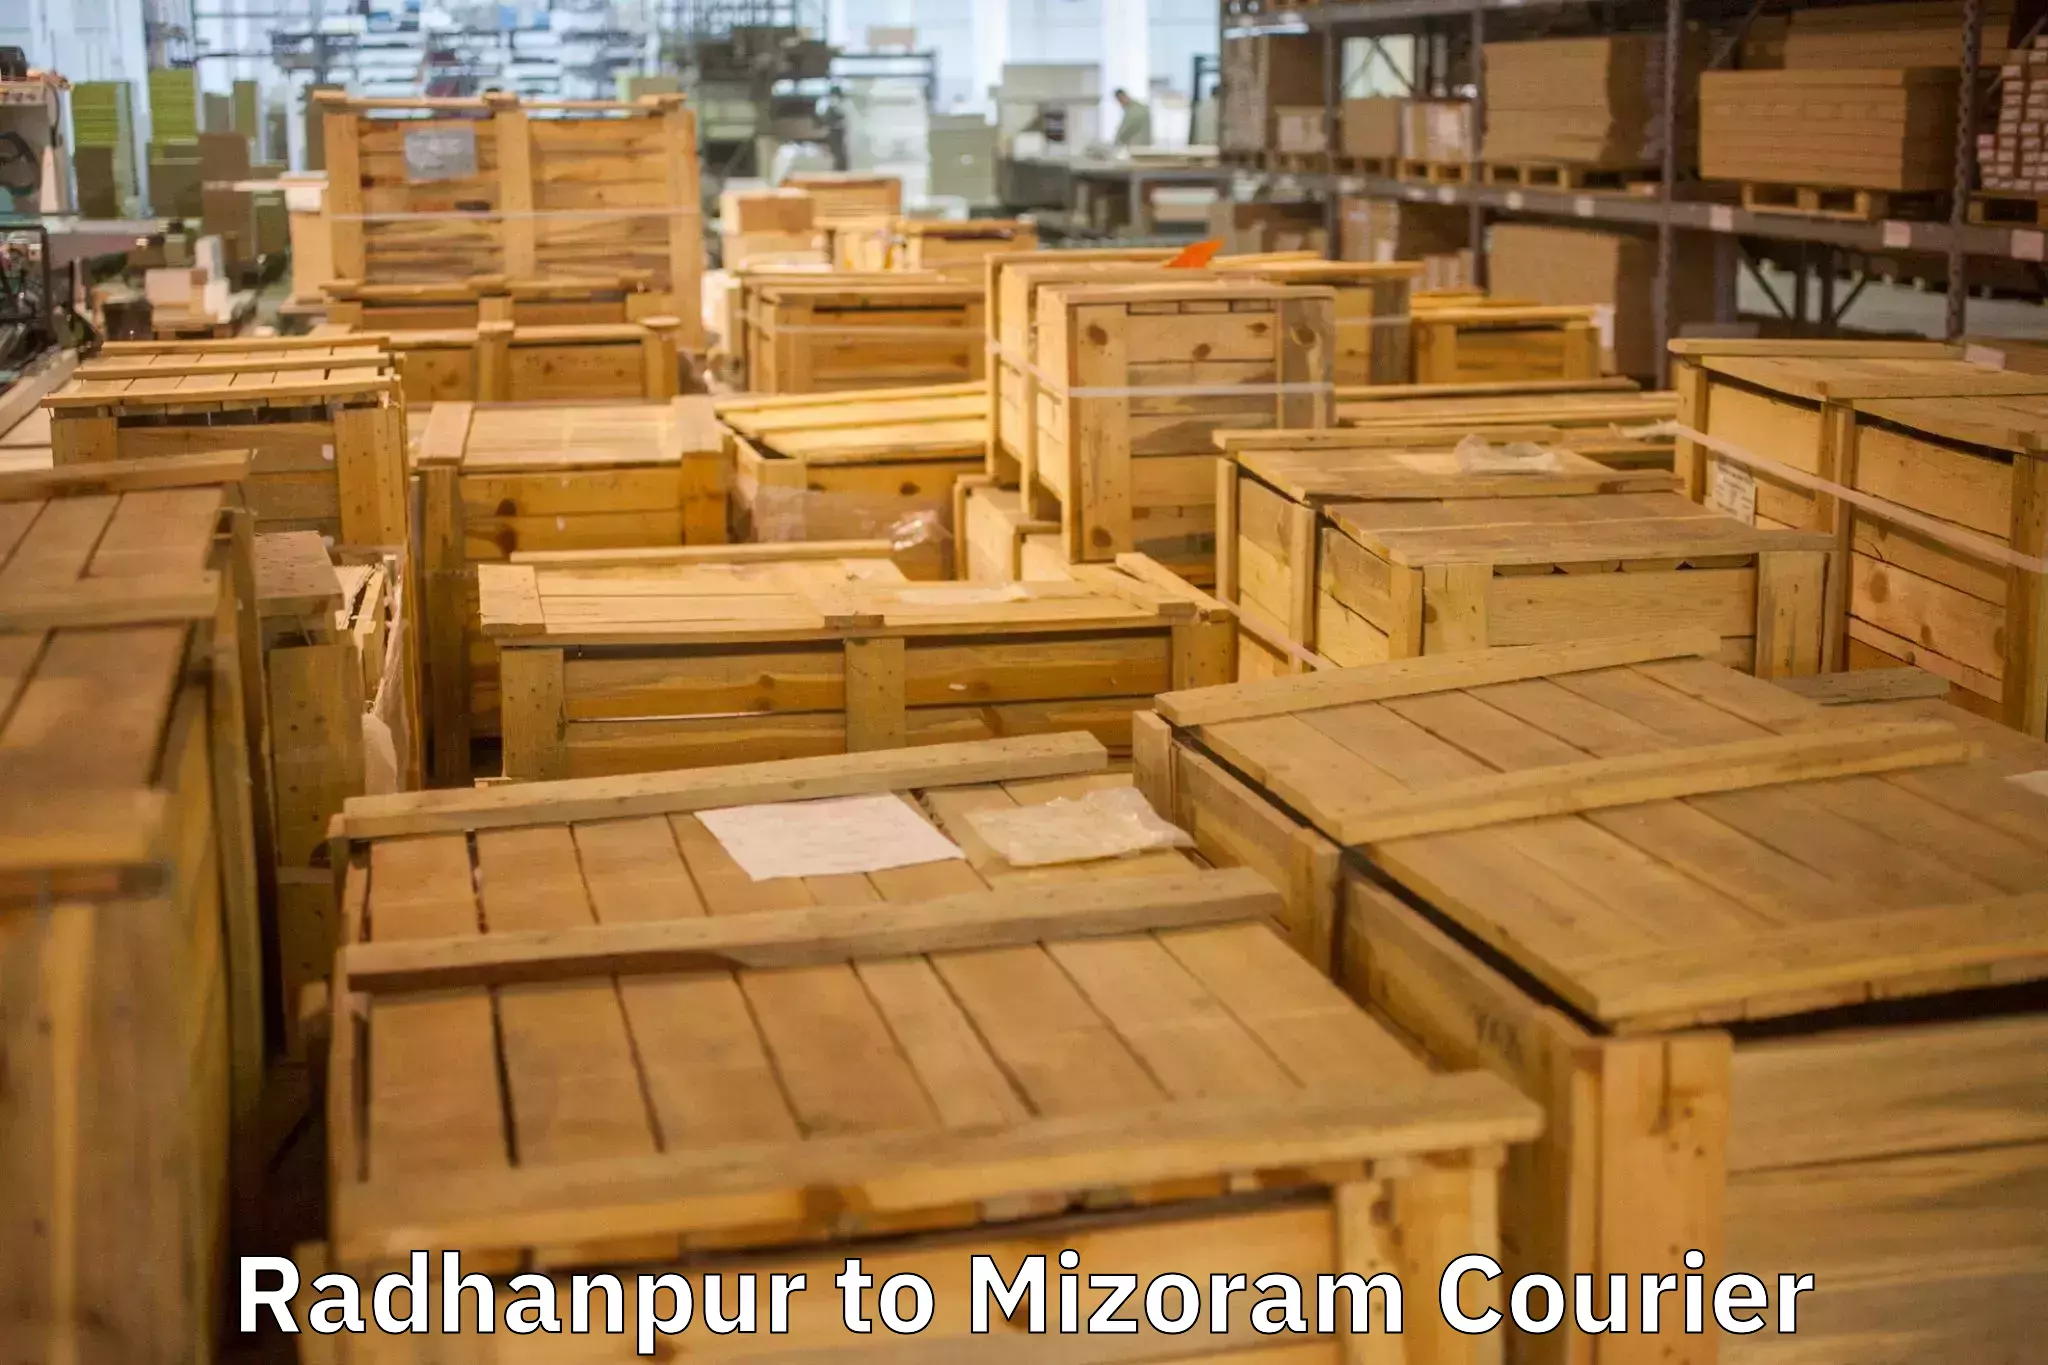 Furniture moving service Radhanpur to Mizoram